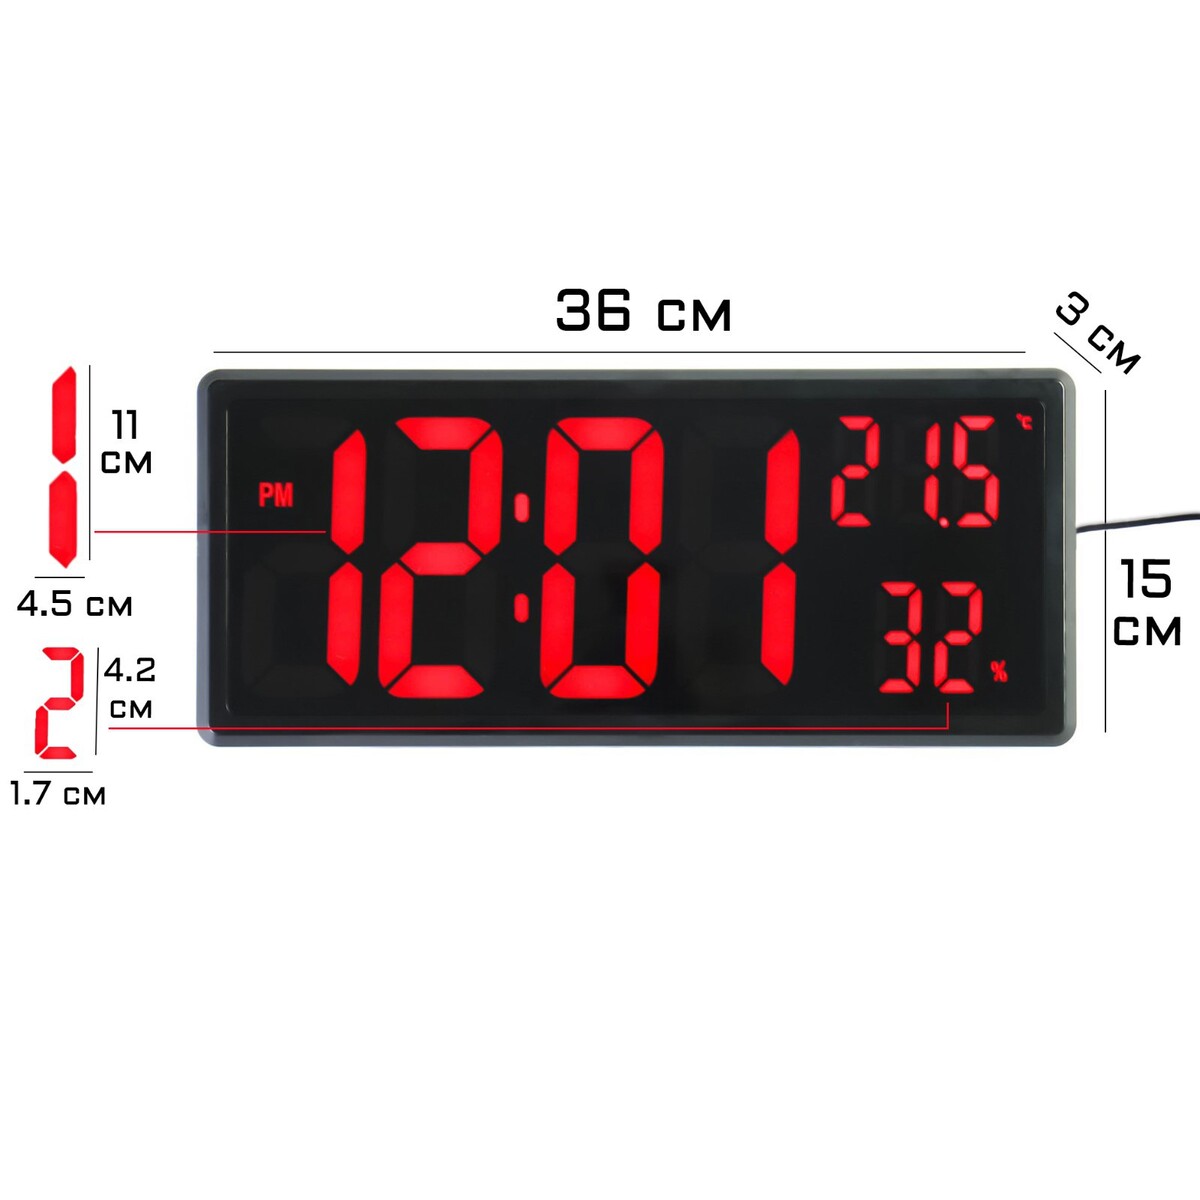 Часы электронные настенные, настольные, с будильником, 36 х 15 х 3 см, красные цифры часы электронные настенные настольные с будильником 15 x 36 x 3 см usb